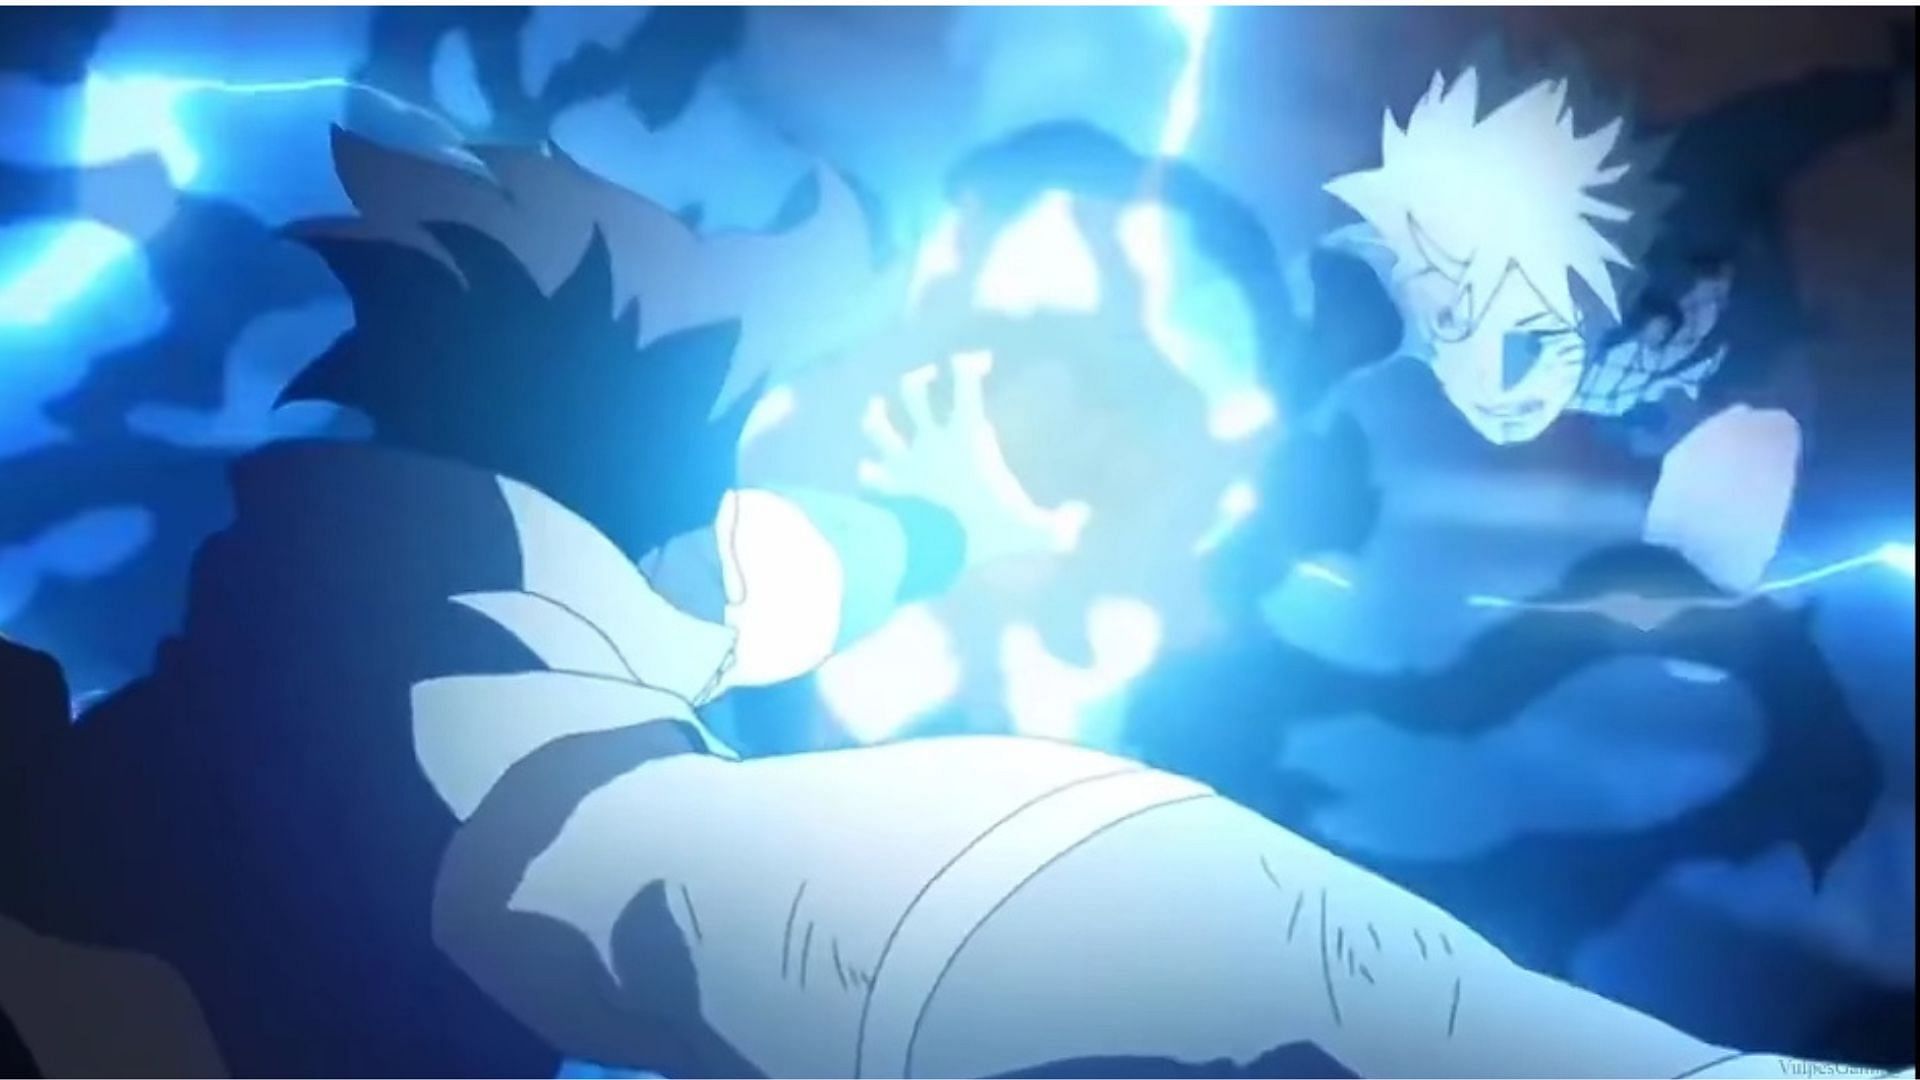 Sasuke vs. Naruto (Image via Studio Pierrot)